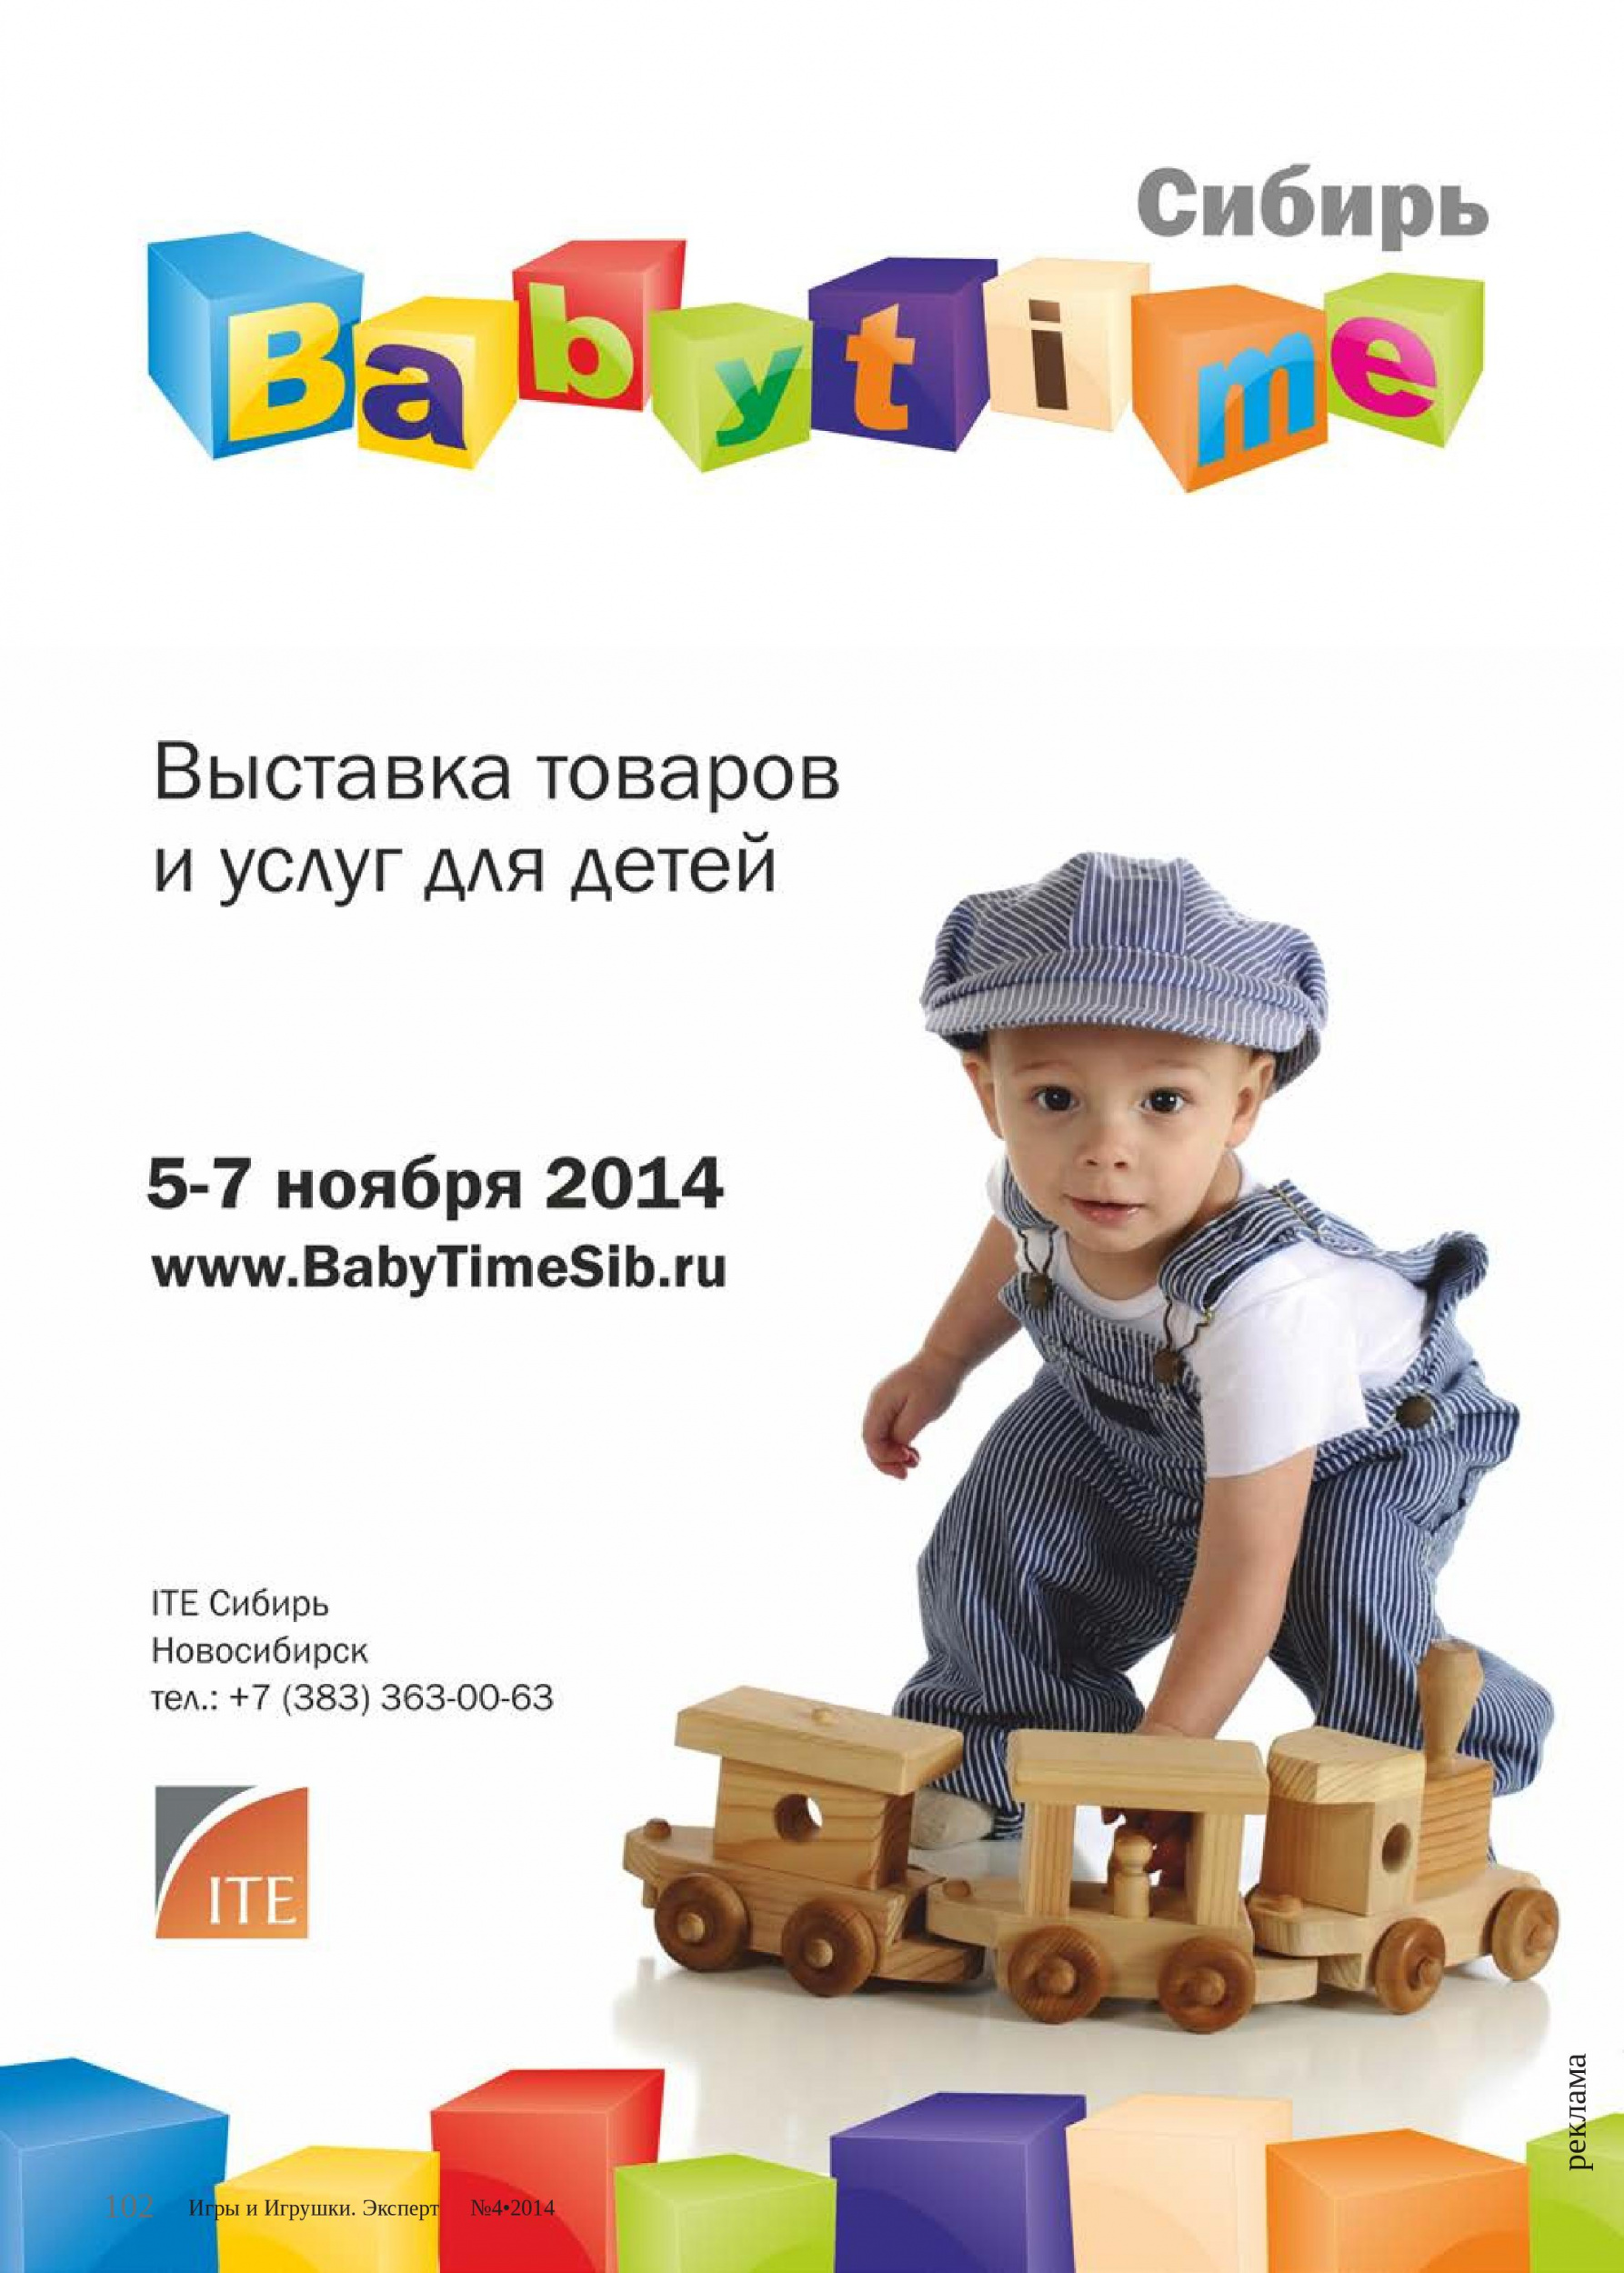 BabyTime-Сибирь